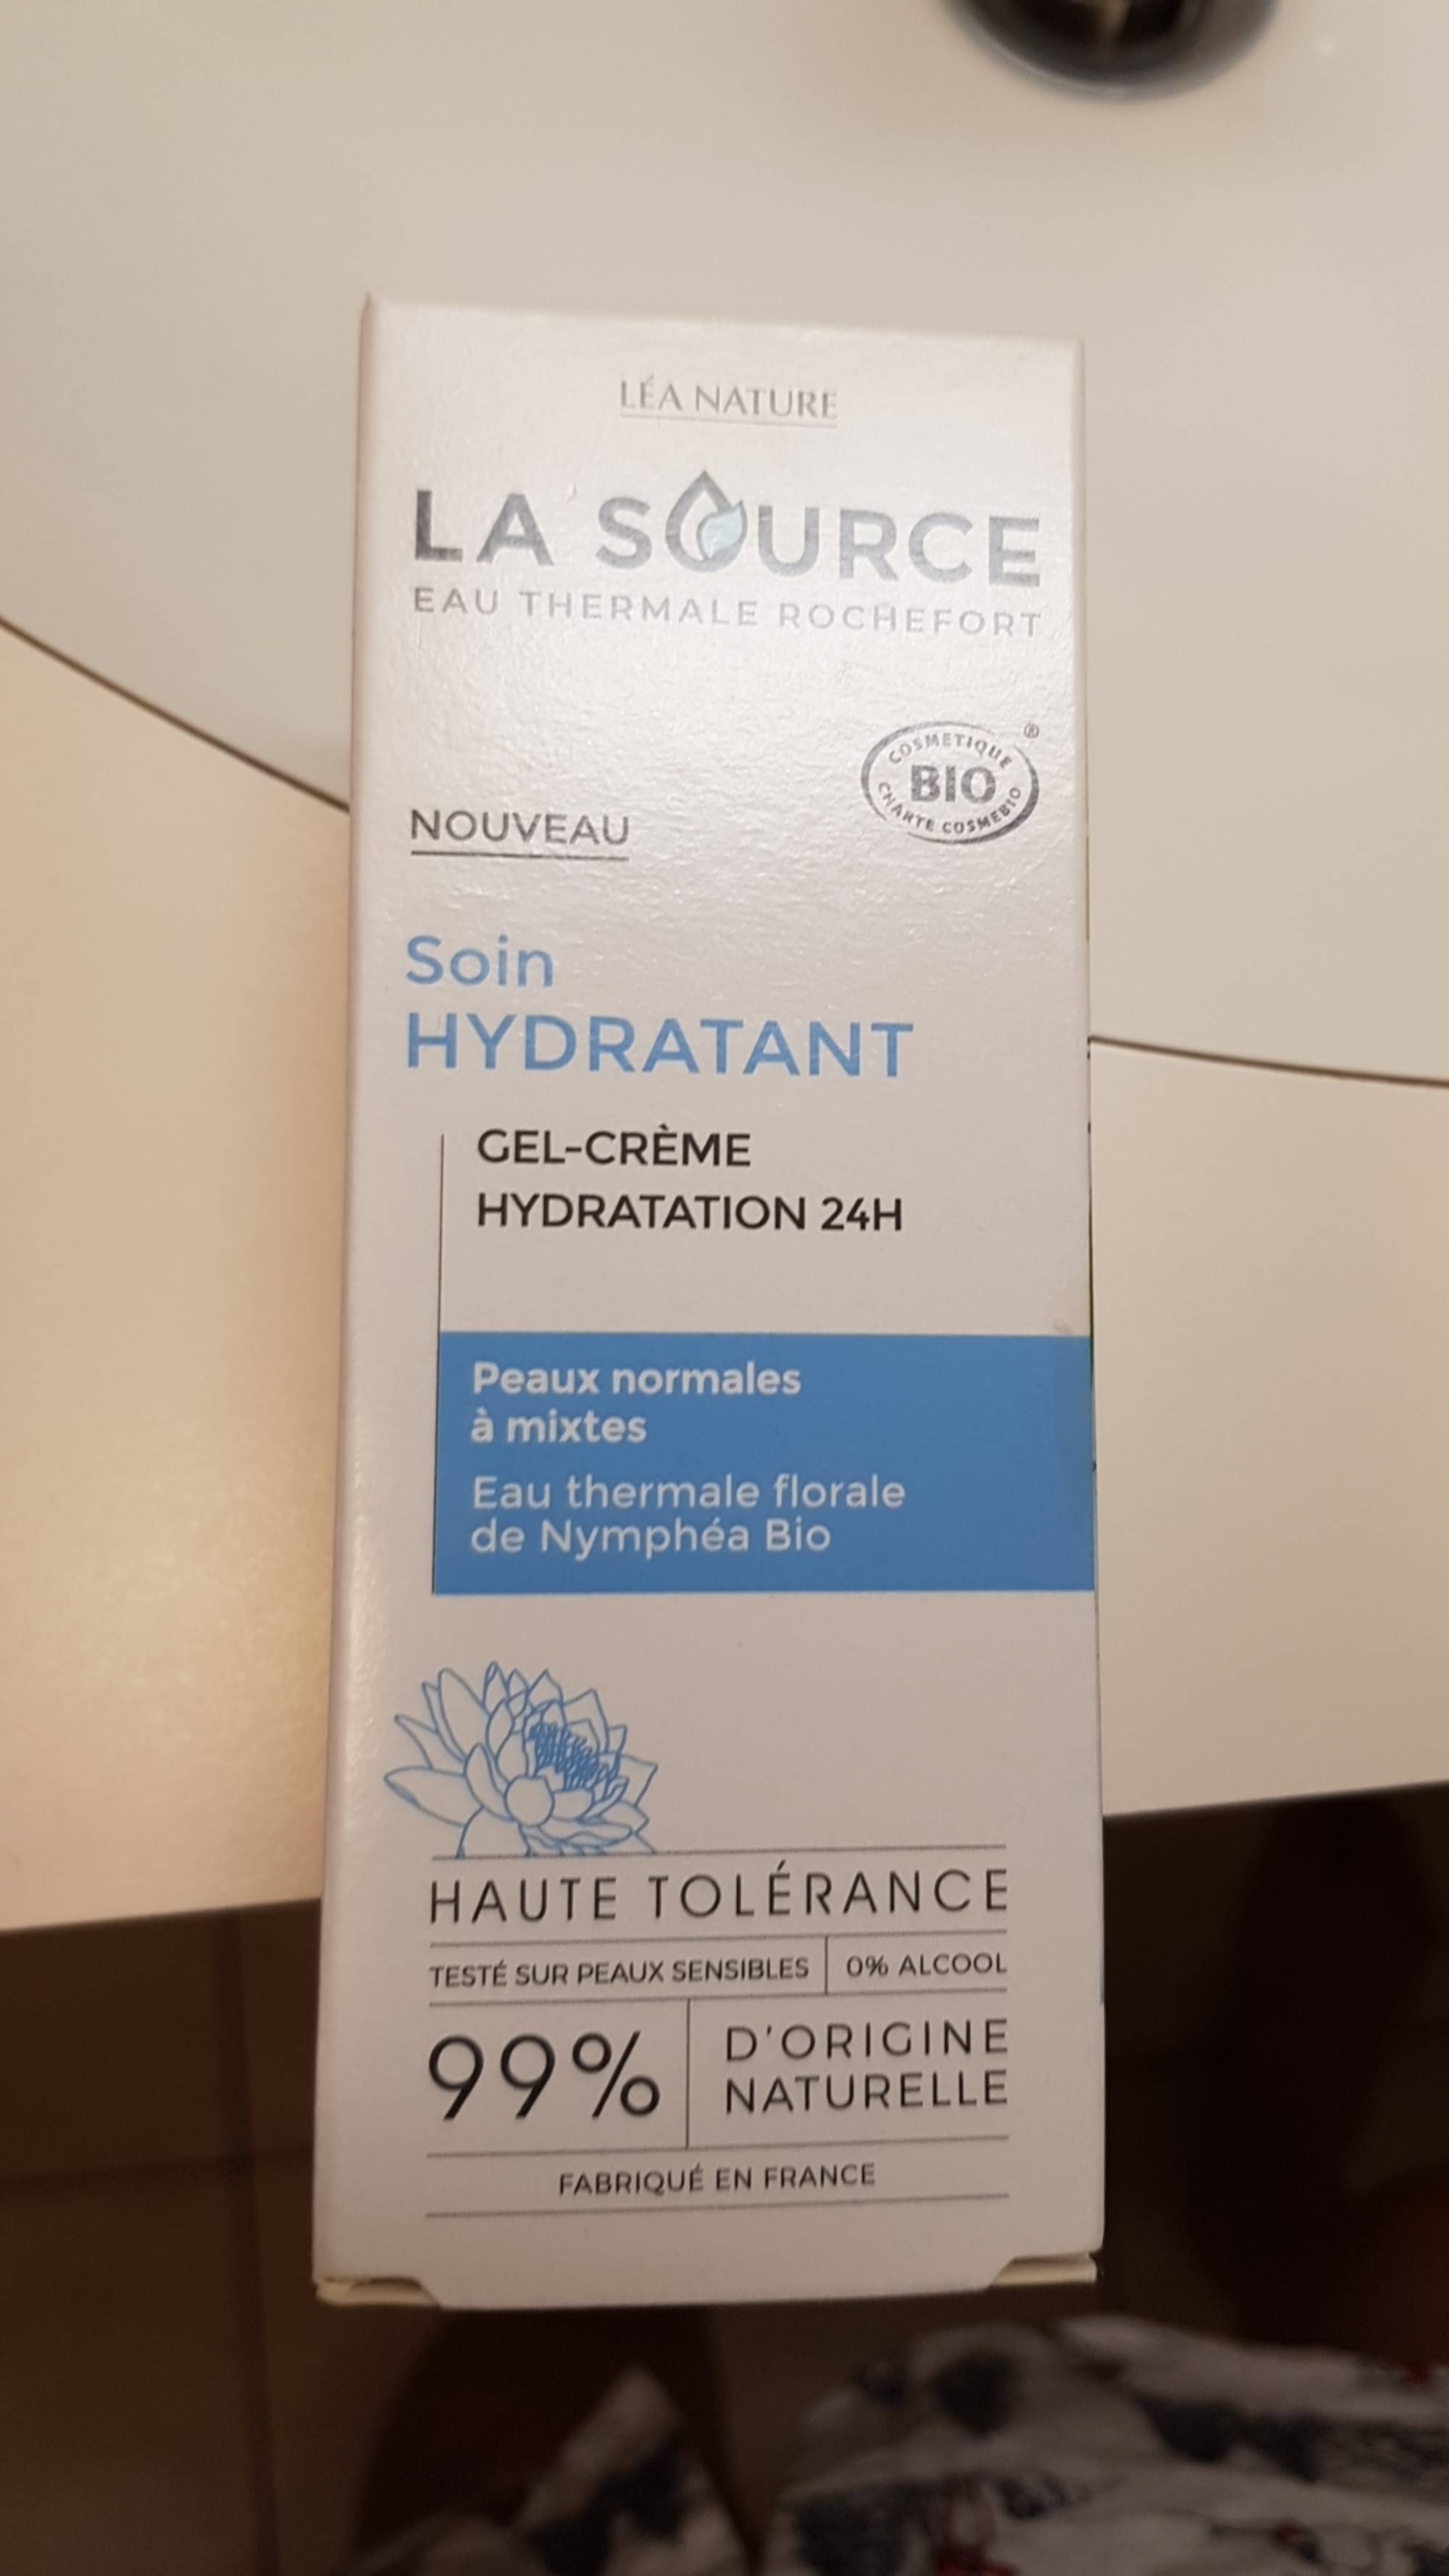 LÉA NATURE - La source - Soin hydratant - Gel-crème hydratation 24h